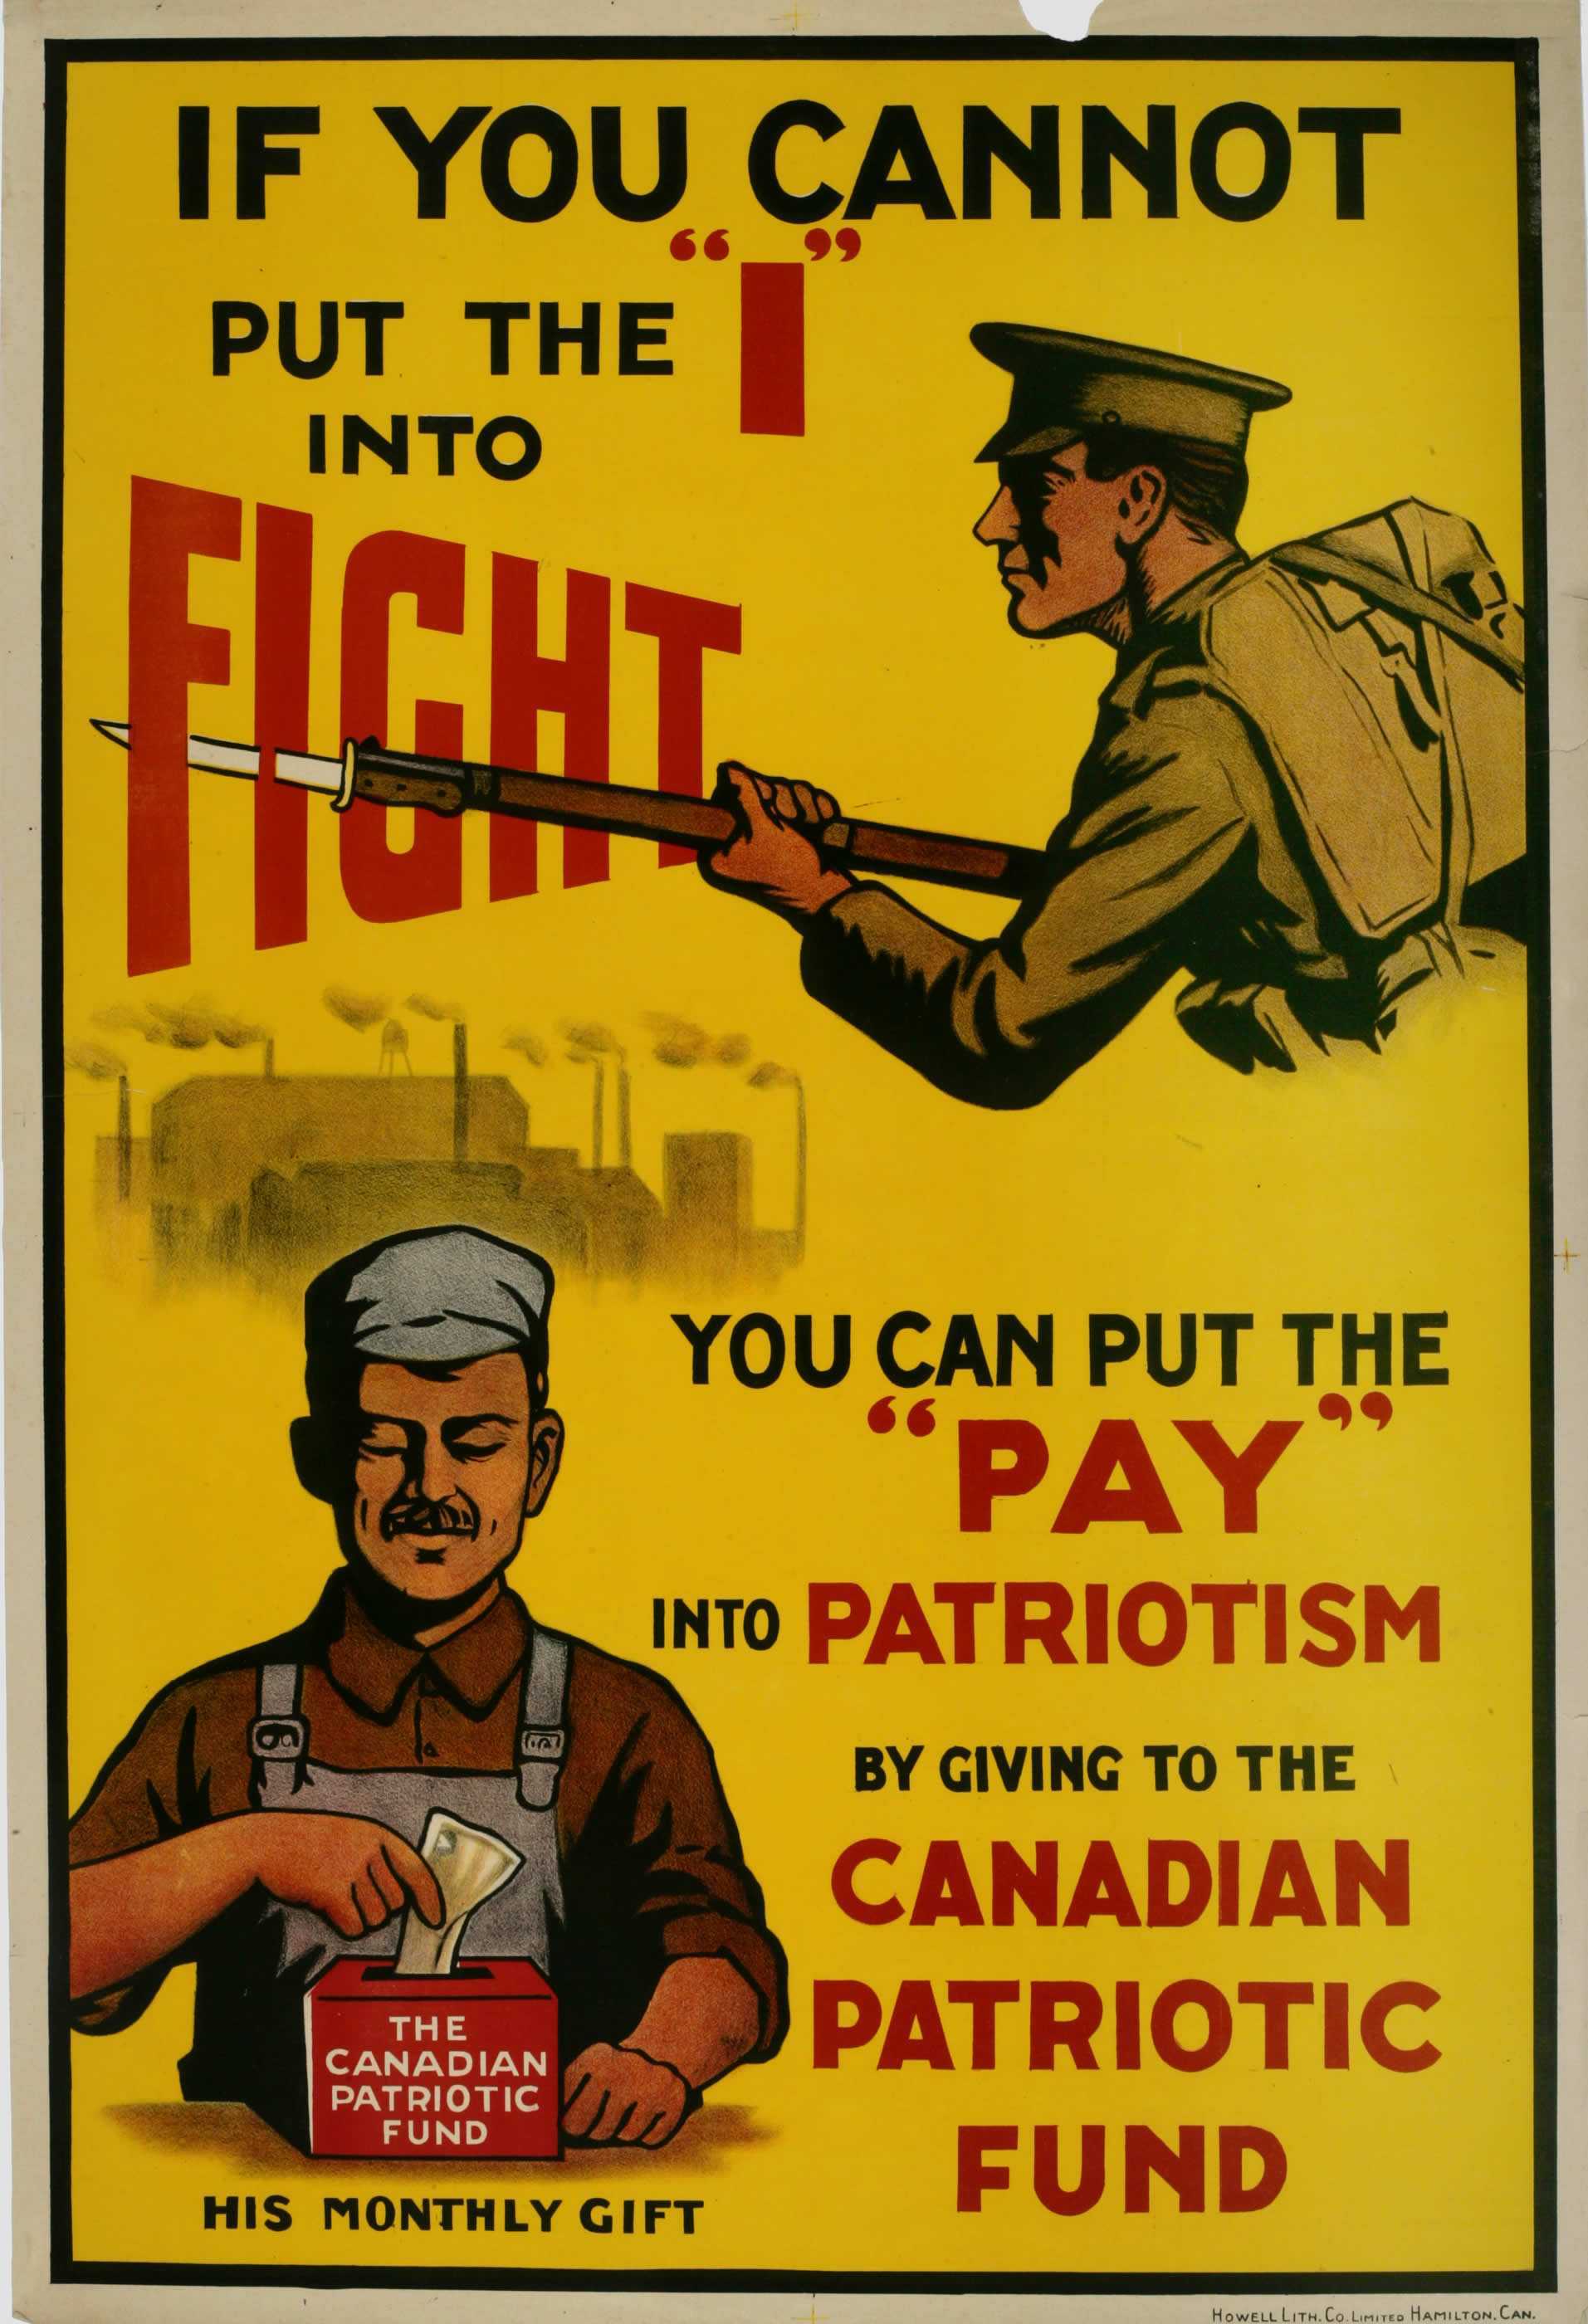 Affiche illustrée en couleur – Moitié supérieure : Un soldat pointe une arme munie d’une baïonnette. Moitié inférieure : Un homme dans une usine dépose de l’argent dans une boîte indiquant « The Canadian Patriotic Fund (Fonds patriotique canadien).